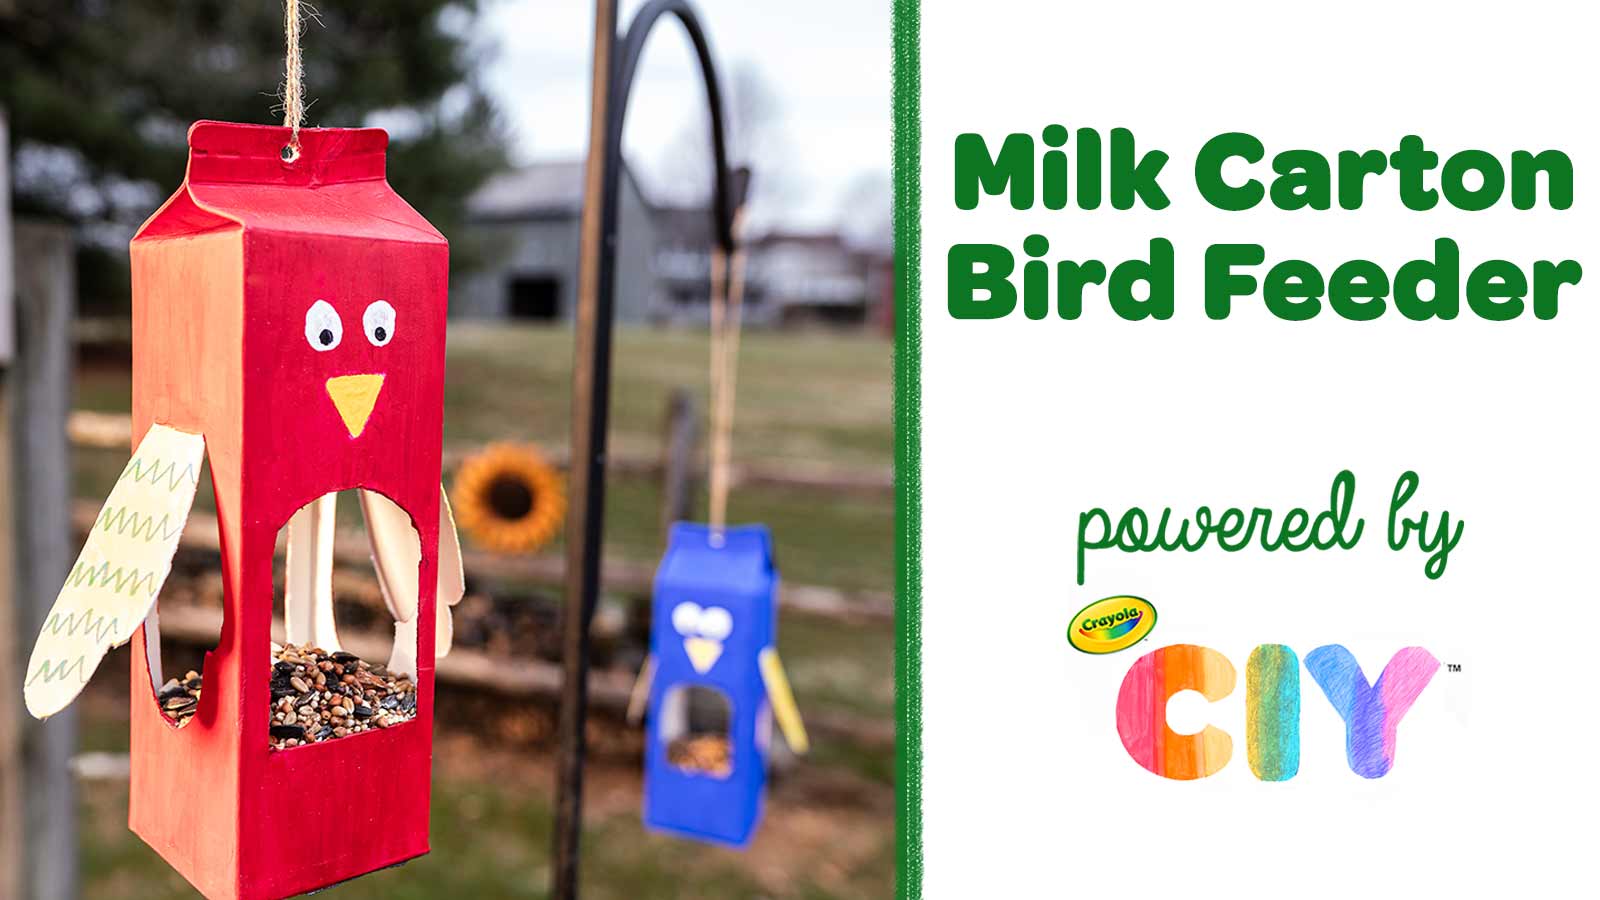 How To Make A Milk Carton Bird Feeder Crafts Crayola Com Crayola Ciy Diy Crafts For Kids And Adults Crayola Com